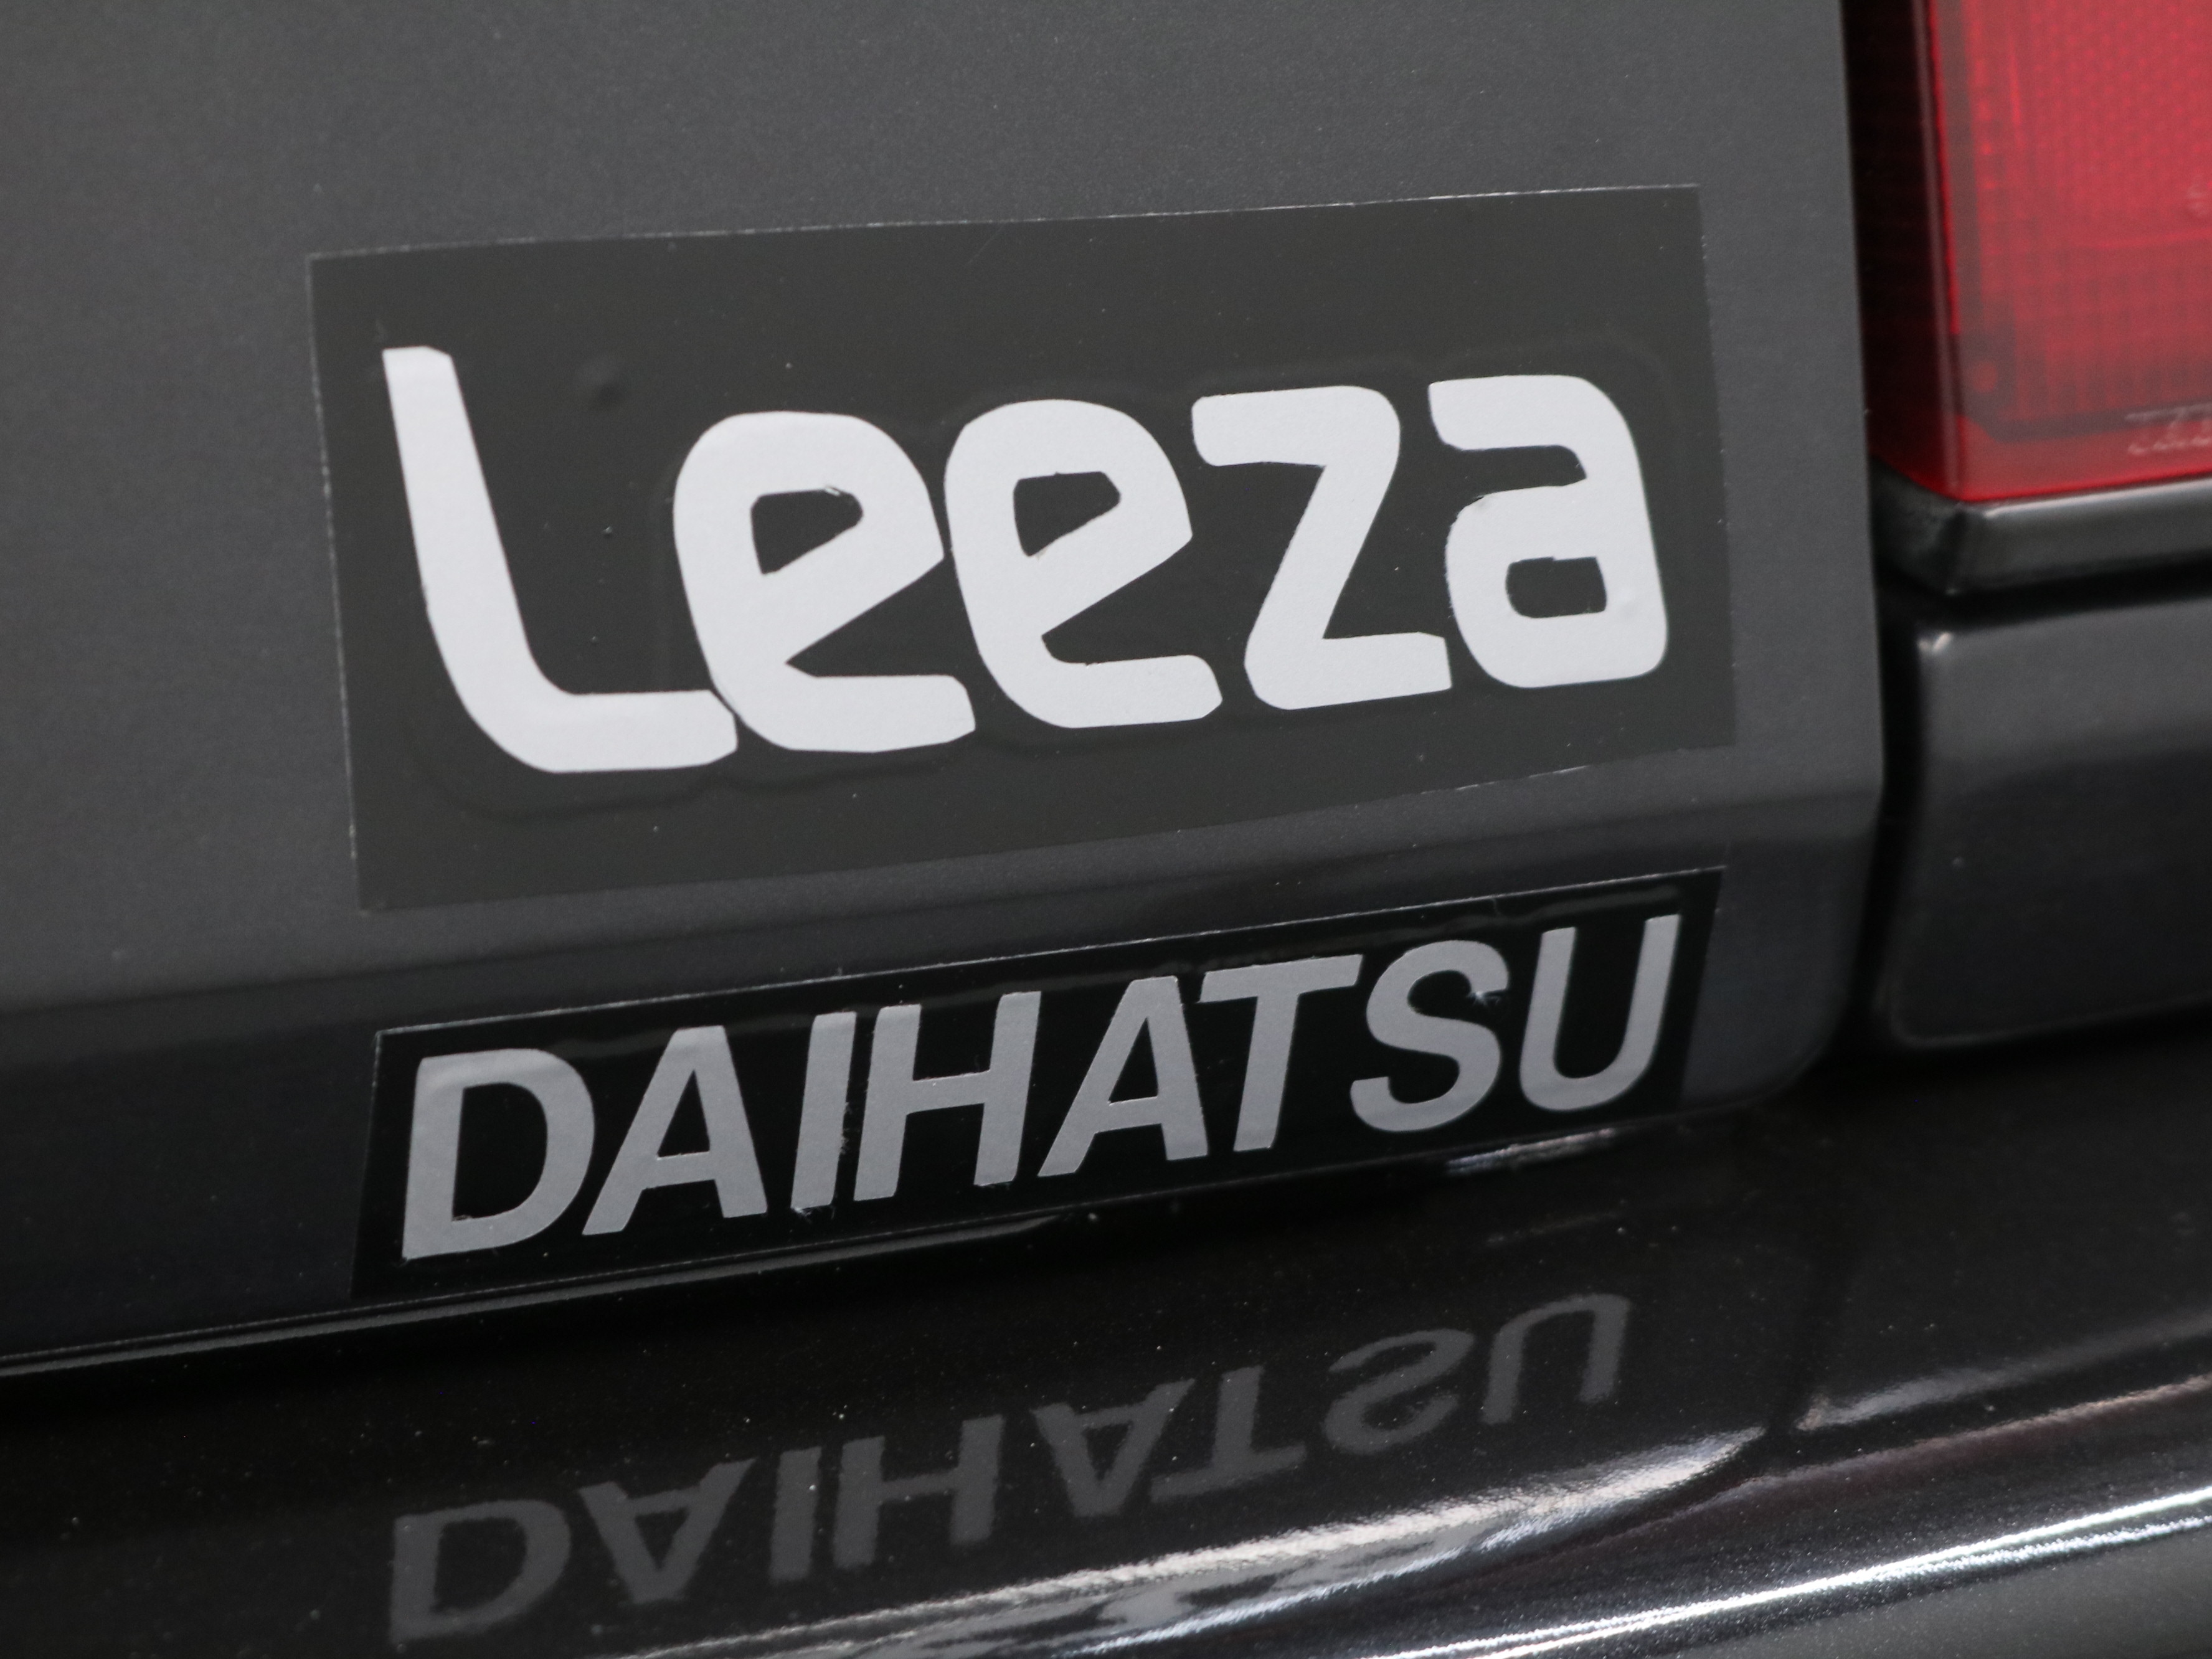 1992 Daihatsu Leeza 41